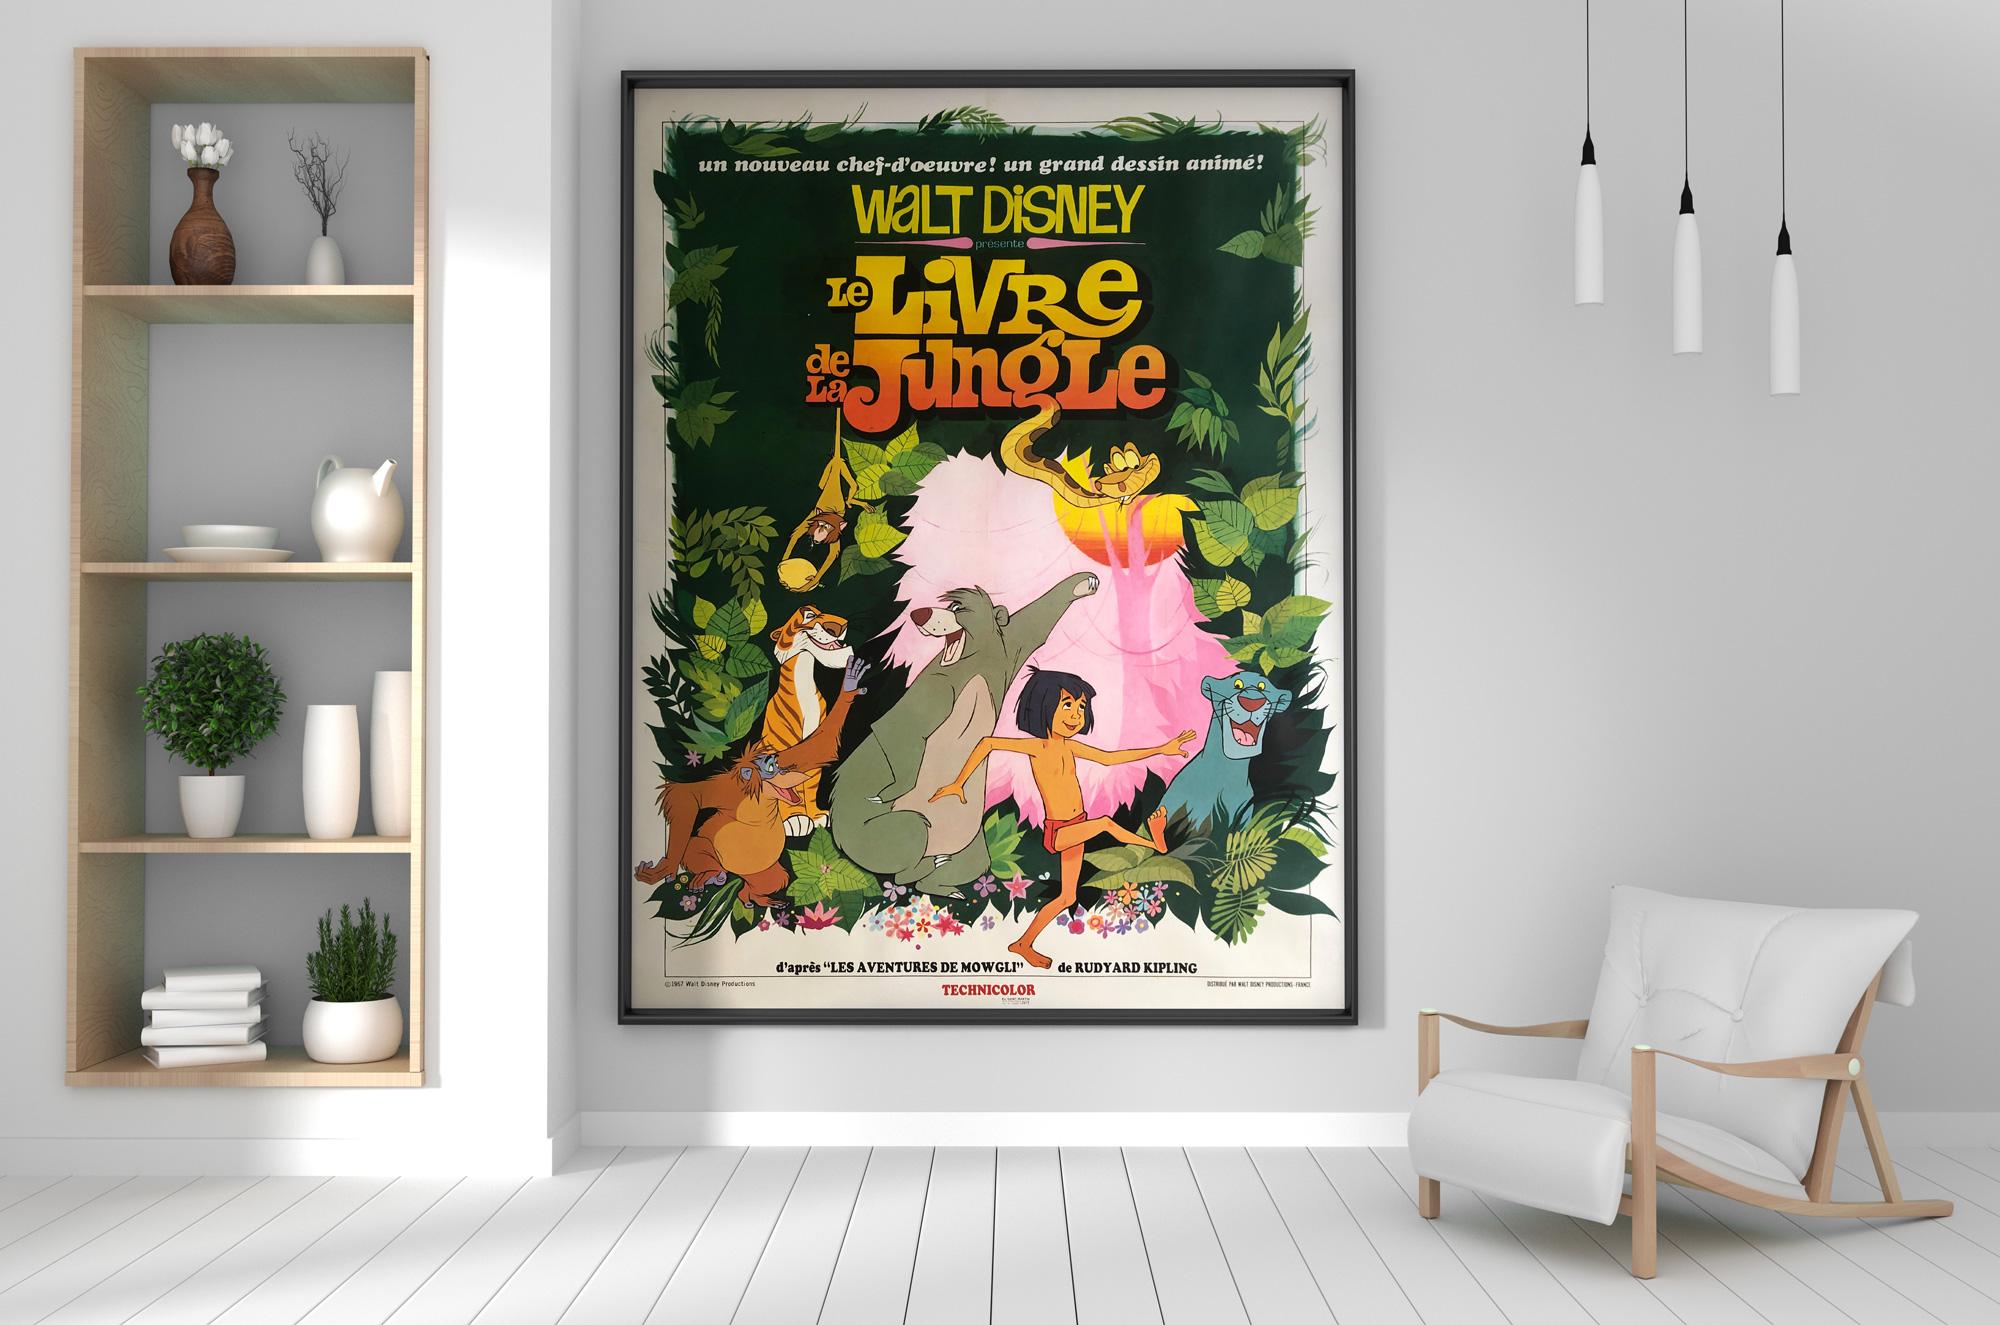 Le Livre de la Jungle ! Fantastique illustration pour le poster original français - année de sortie - du livre de la jungle. Un énorme poster vintage qui fera entrer la jungle dans la tanière d'un homme, ou d'une femme, d'un lionceau !

Le poster a